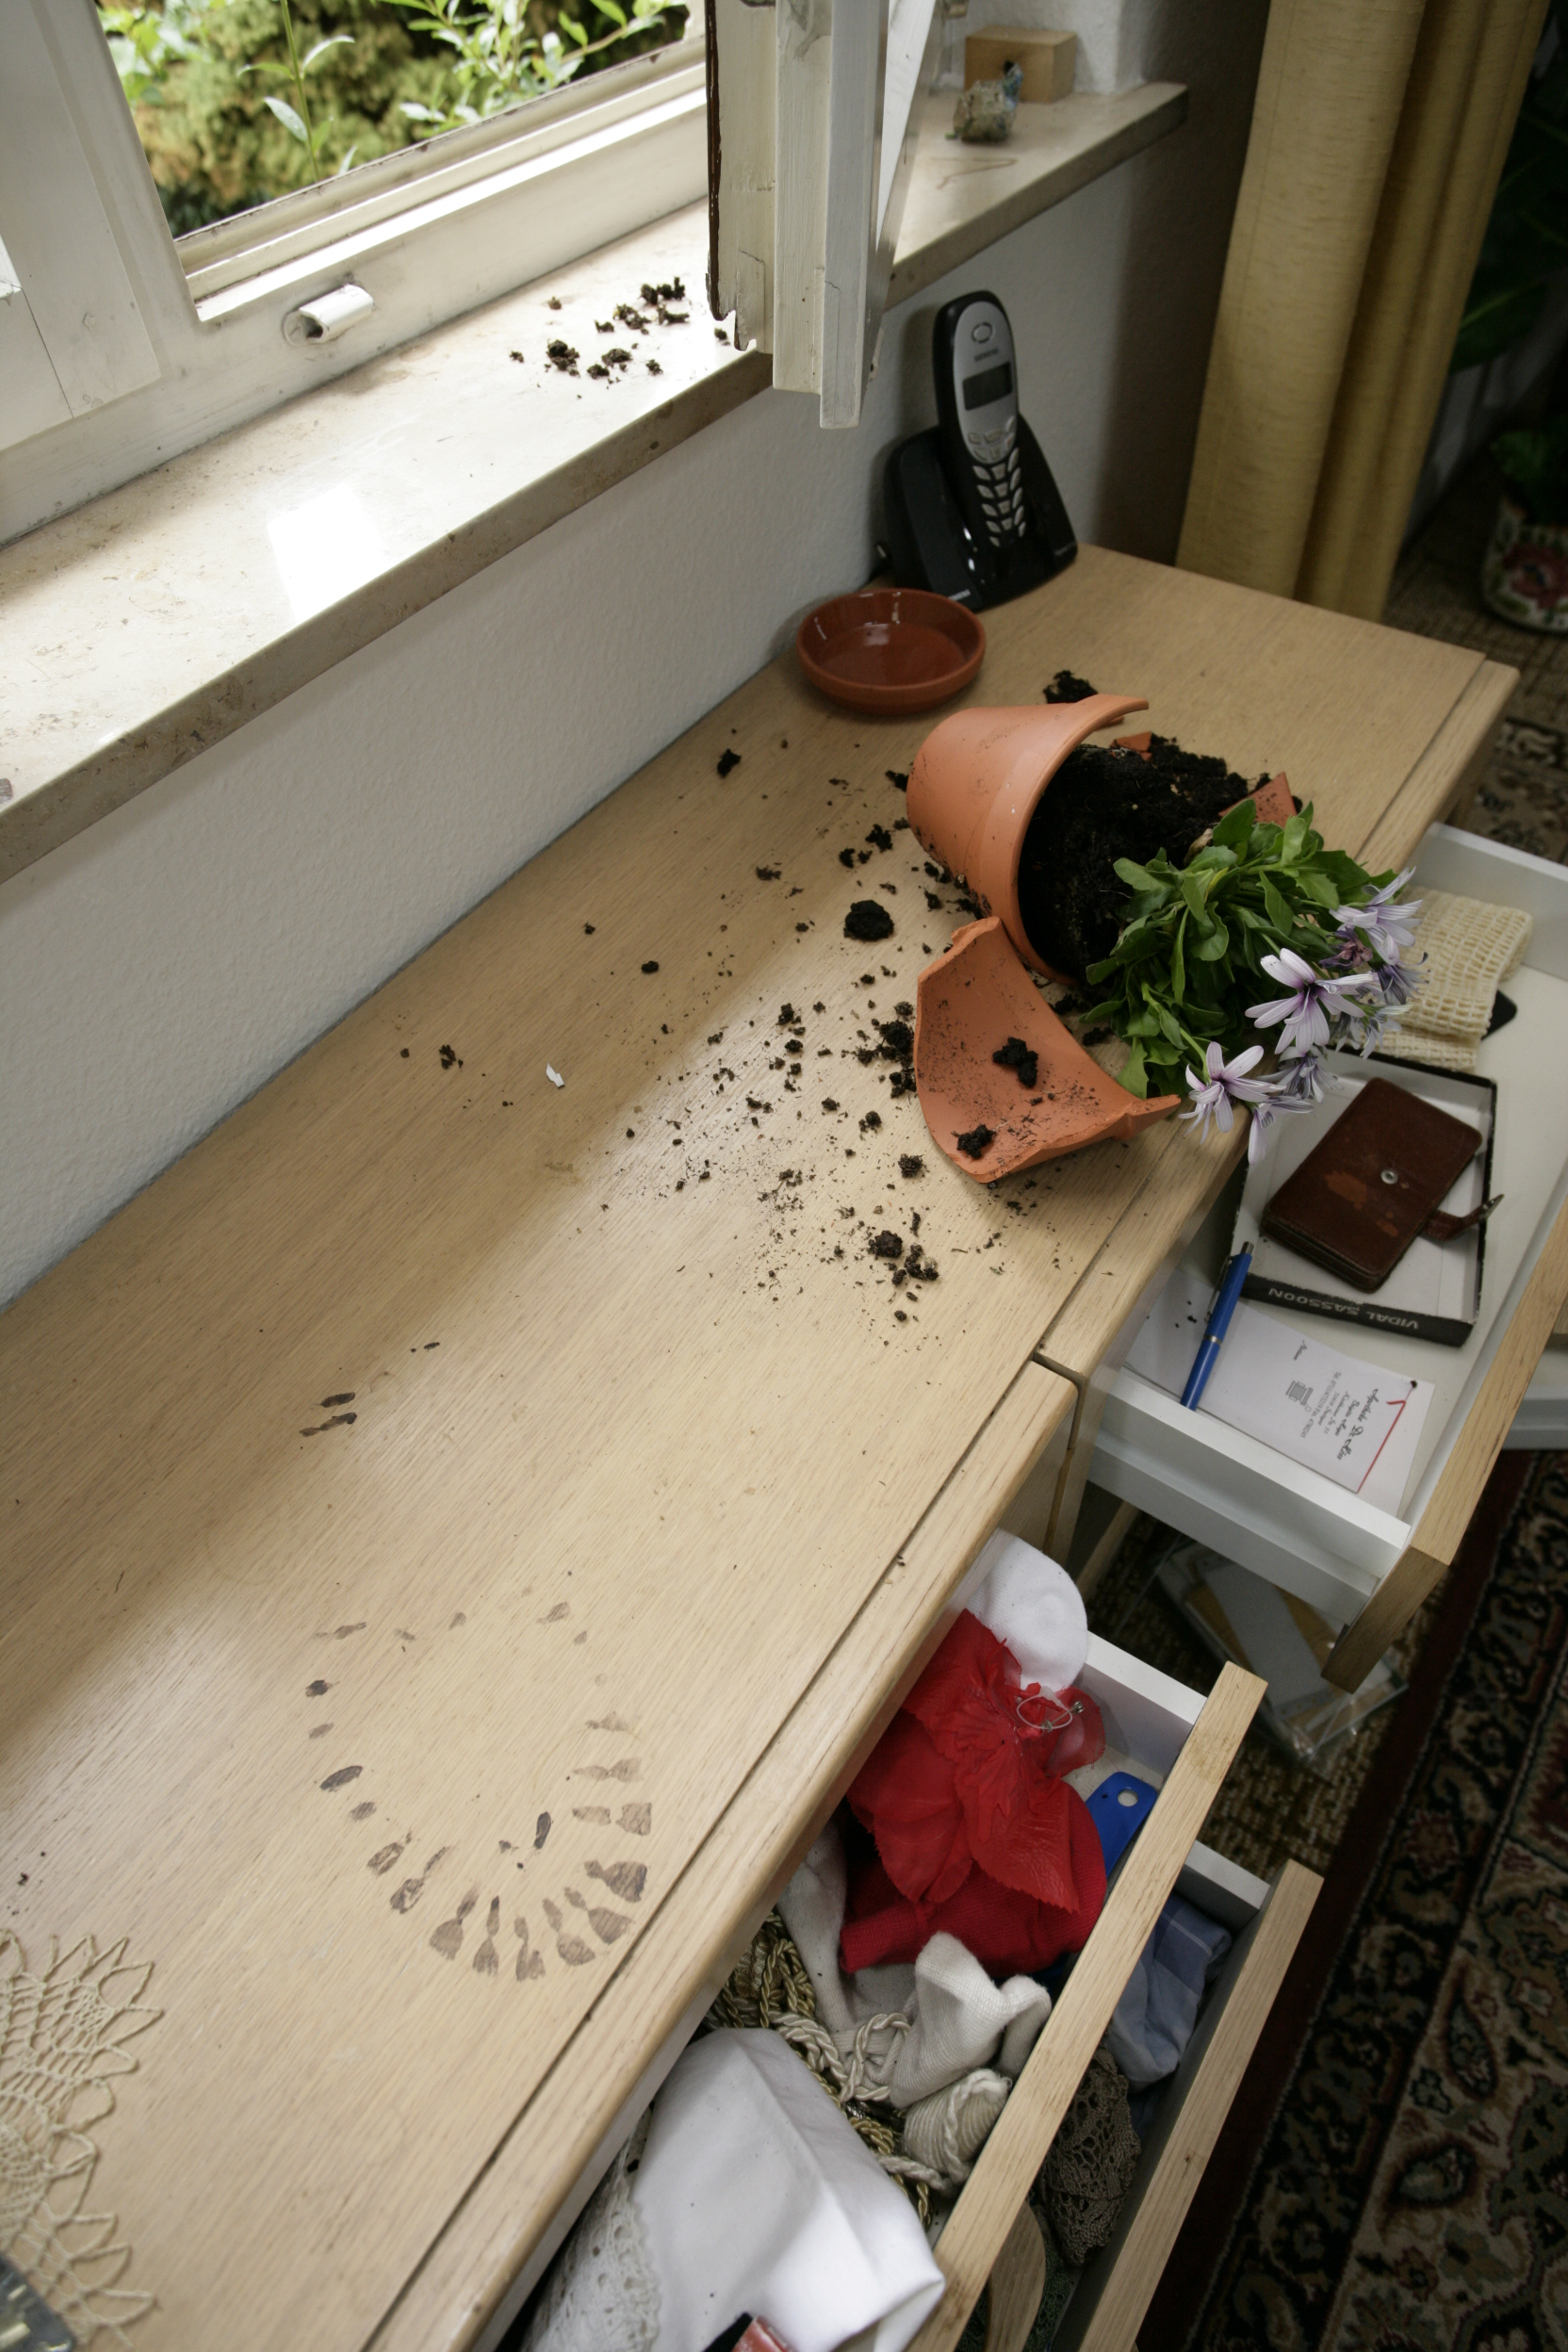 Spuren eines Einbruchs: aufgehebeltes Fenster, ein zerbrochener Blumentopf und werwüstete Schränke